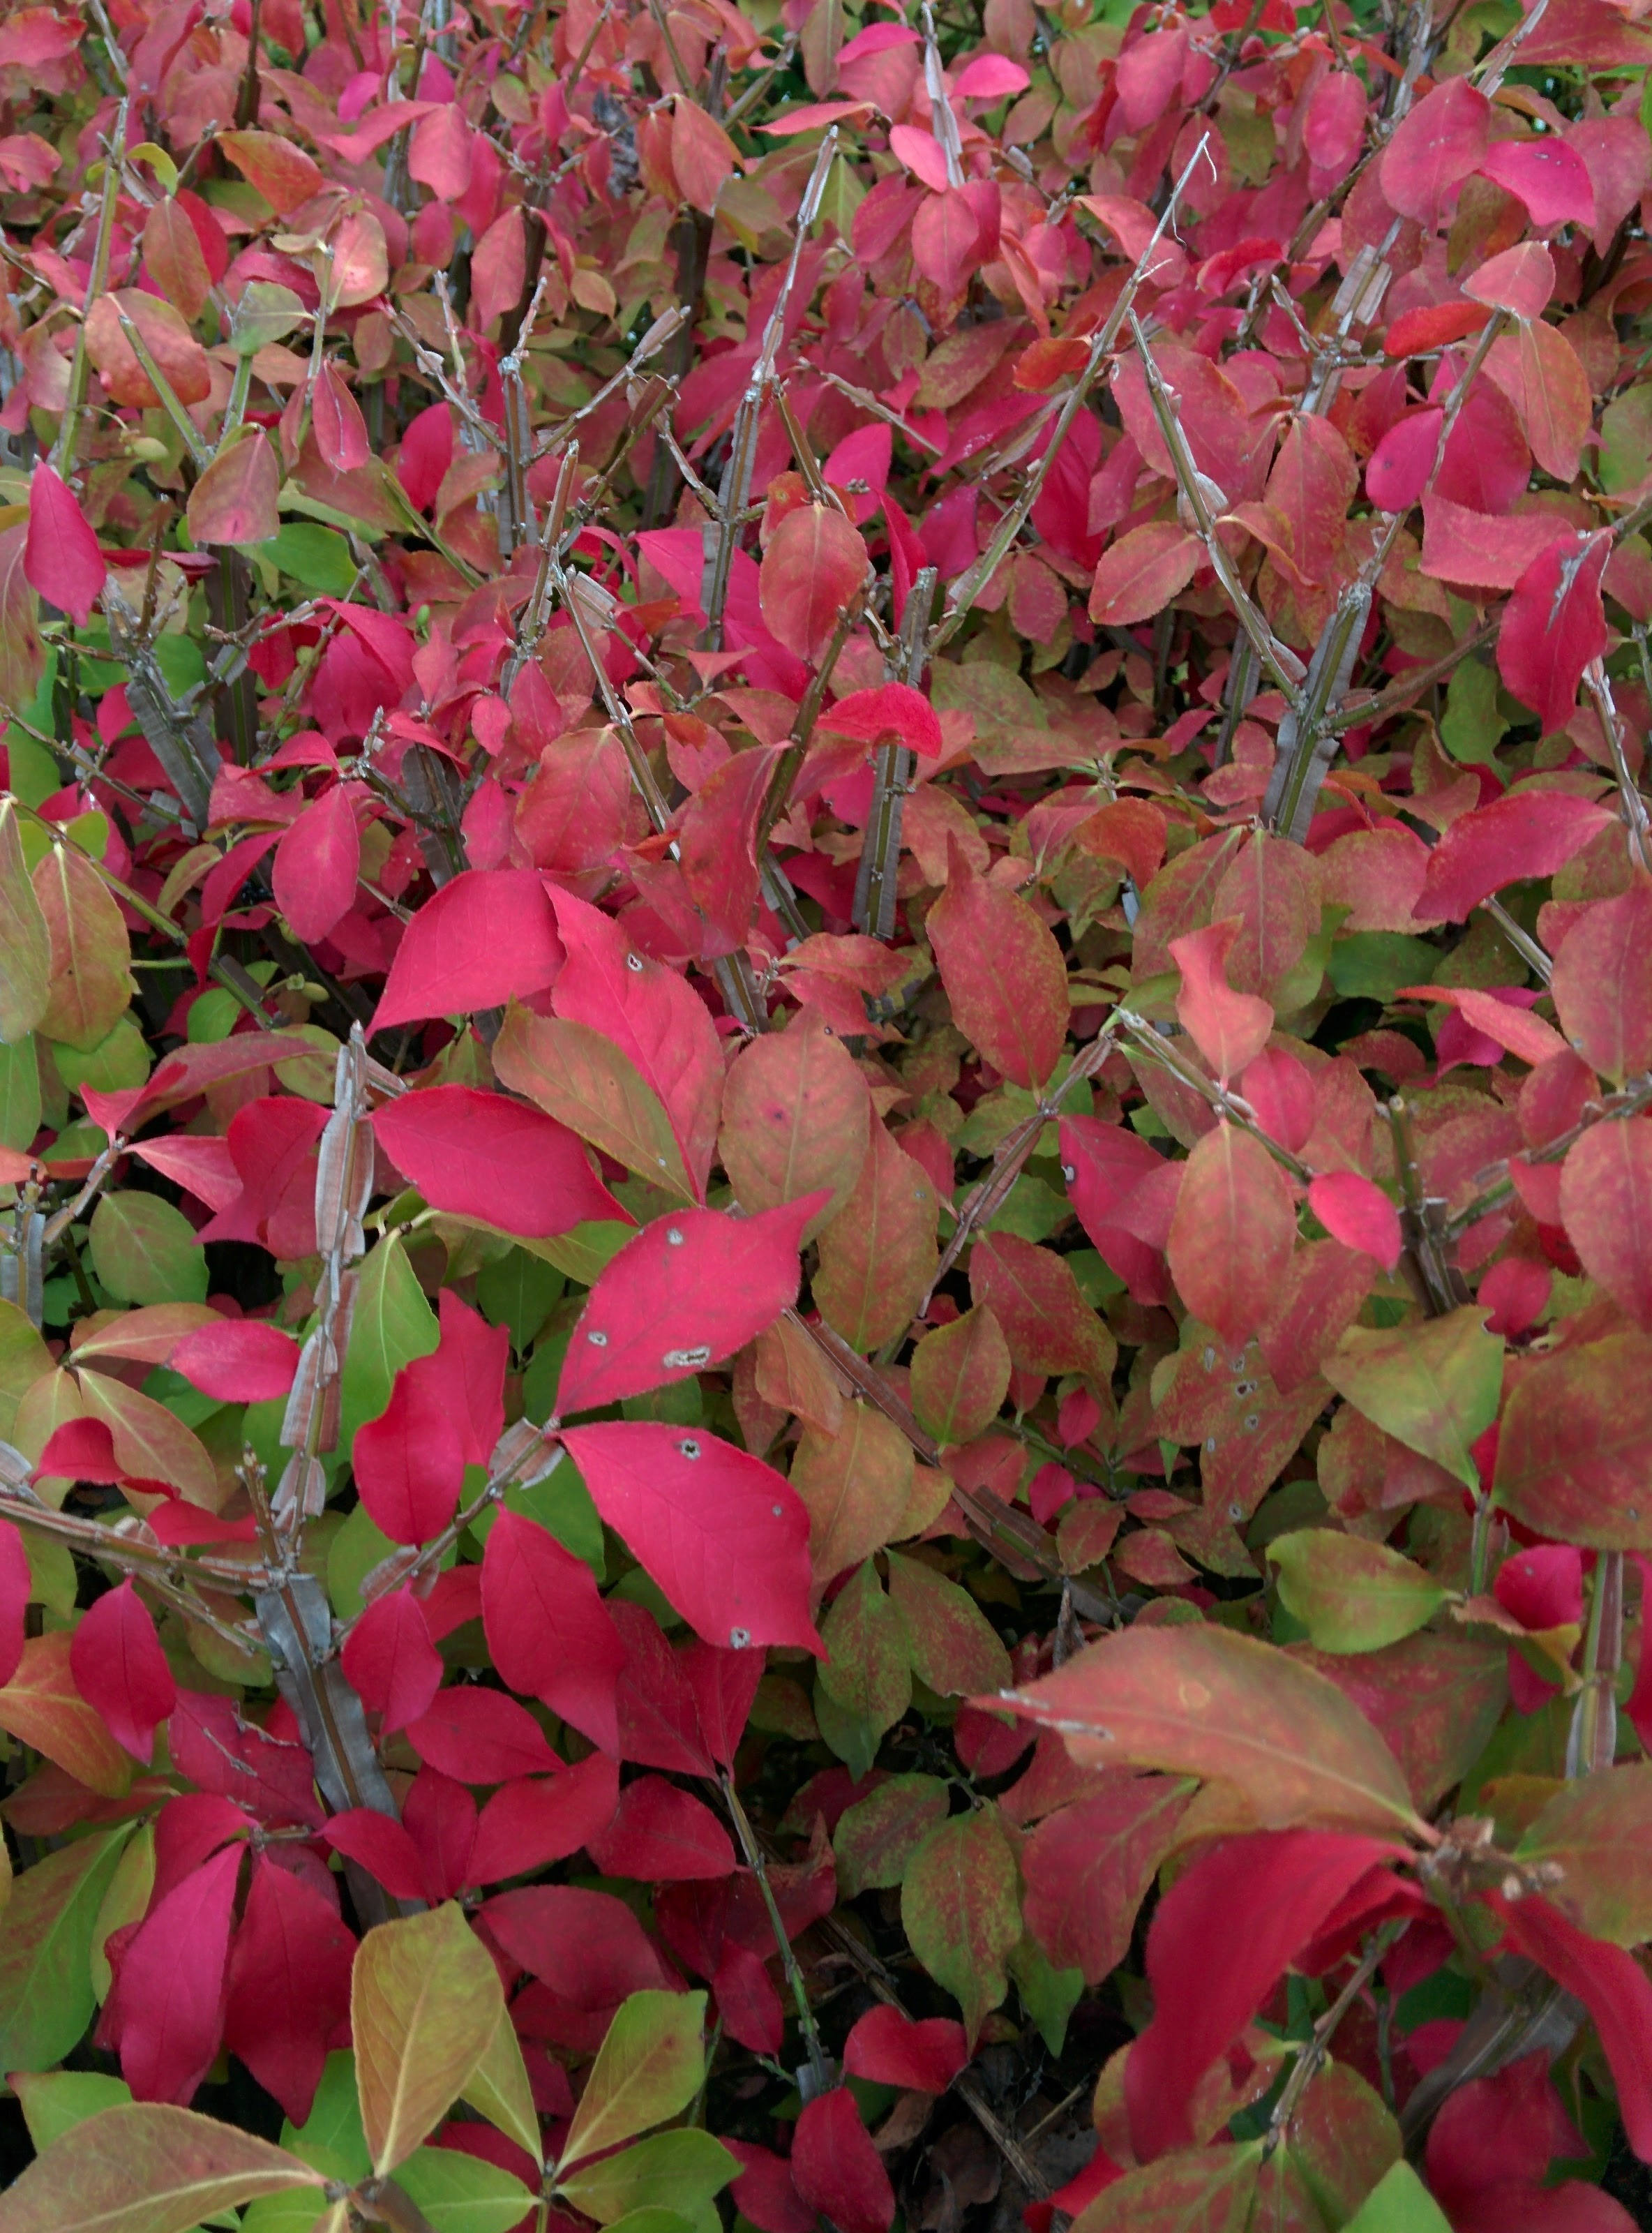 IMG_20151006_165003.jpg 붉게 단풍이 물드는 가을의 화살나무